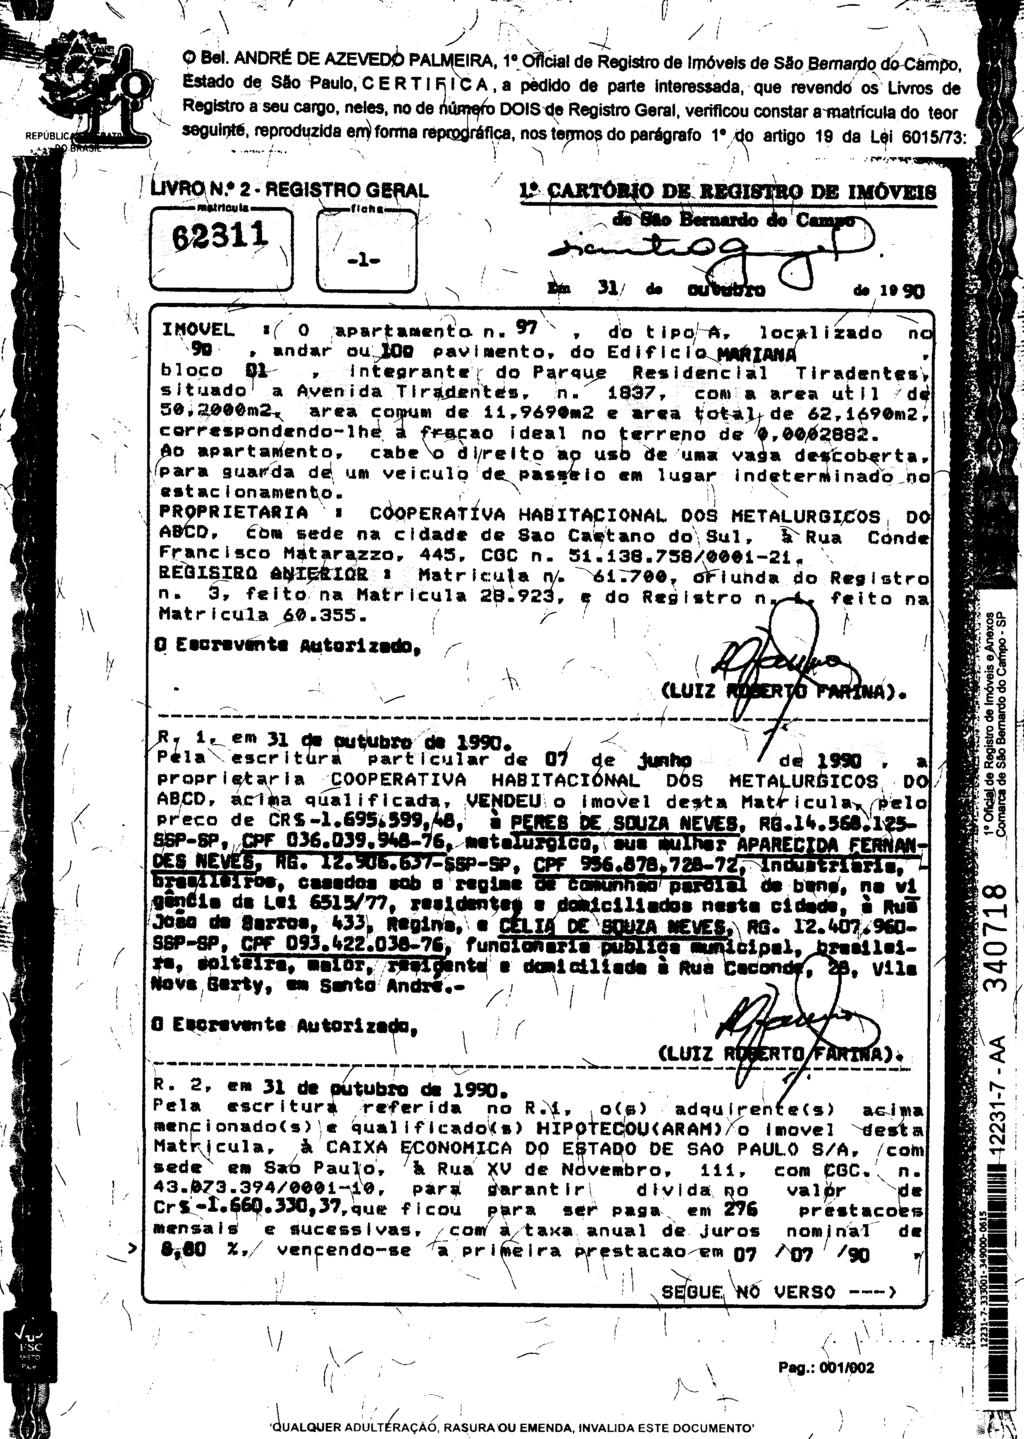 fls. 146 Este documento foi protocolado em 09/09/2015 às 11:10, é cópia do original assinado digitalmente por Tribunal de Justica Sao Paulo e VILENE